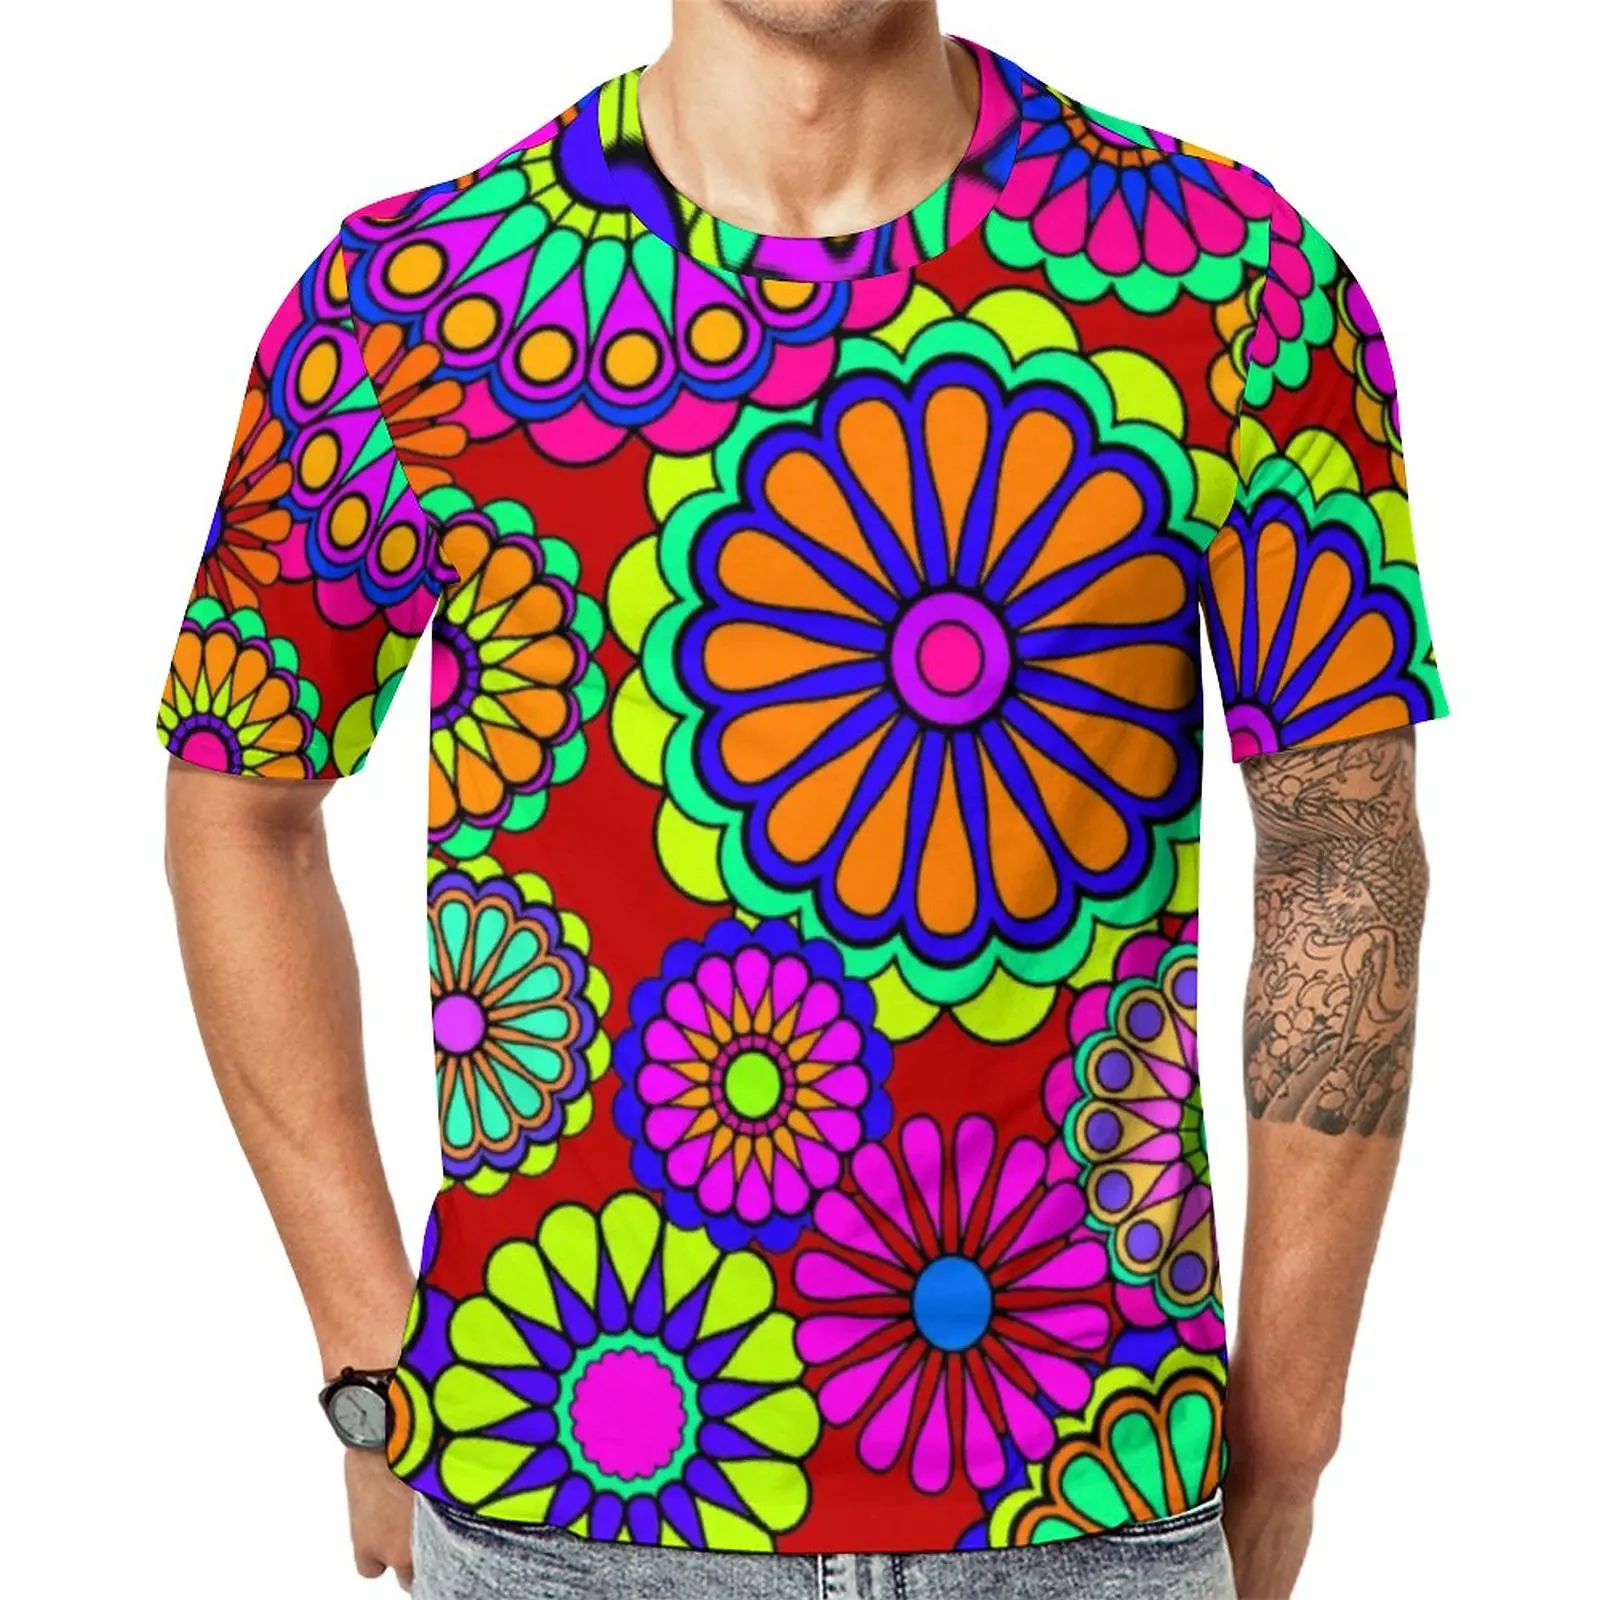 

Красочная футболка с цветочным принтом, Ретро стиль, хиппи, уличная одежда, футболки с круглым вырезом, популярная Летняя мужская футболка с графическим рисунком, приблизительно 6XL